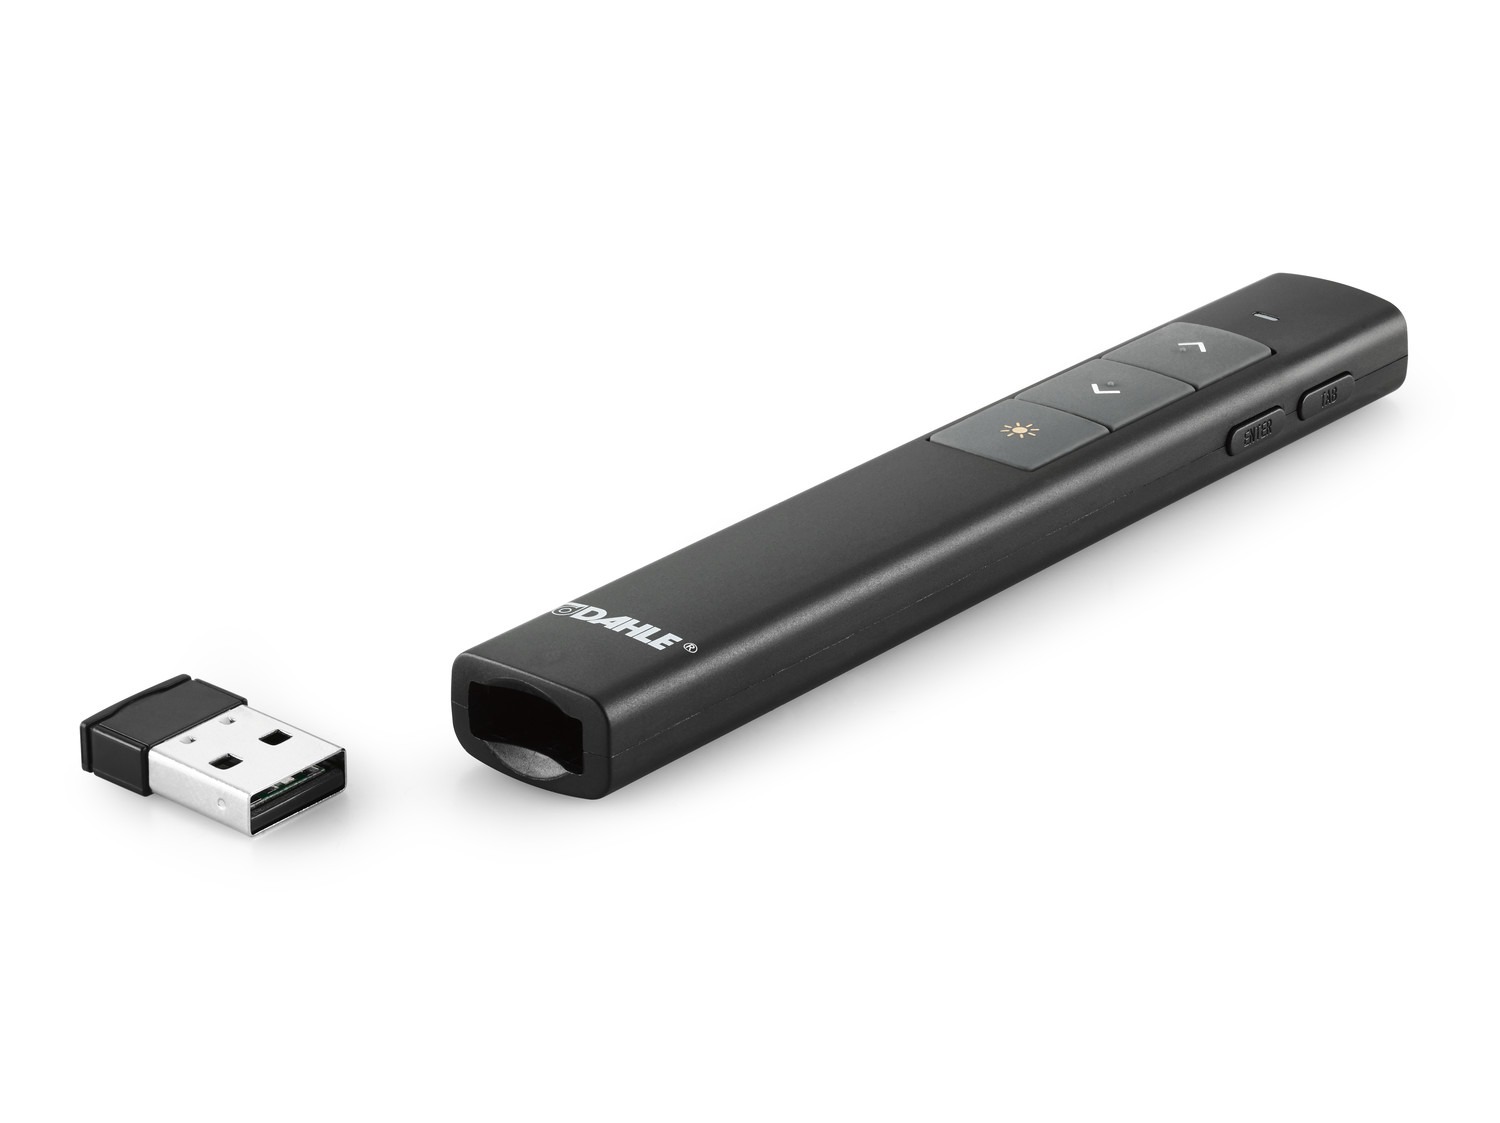 Der Presenter lässt sich durch den USB-Receiver einfach und schnell mit dem Computer verbinden. Kompatibel mit USB 1.1/ 2.0/ 3.0